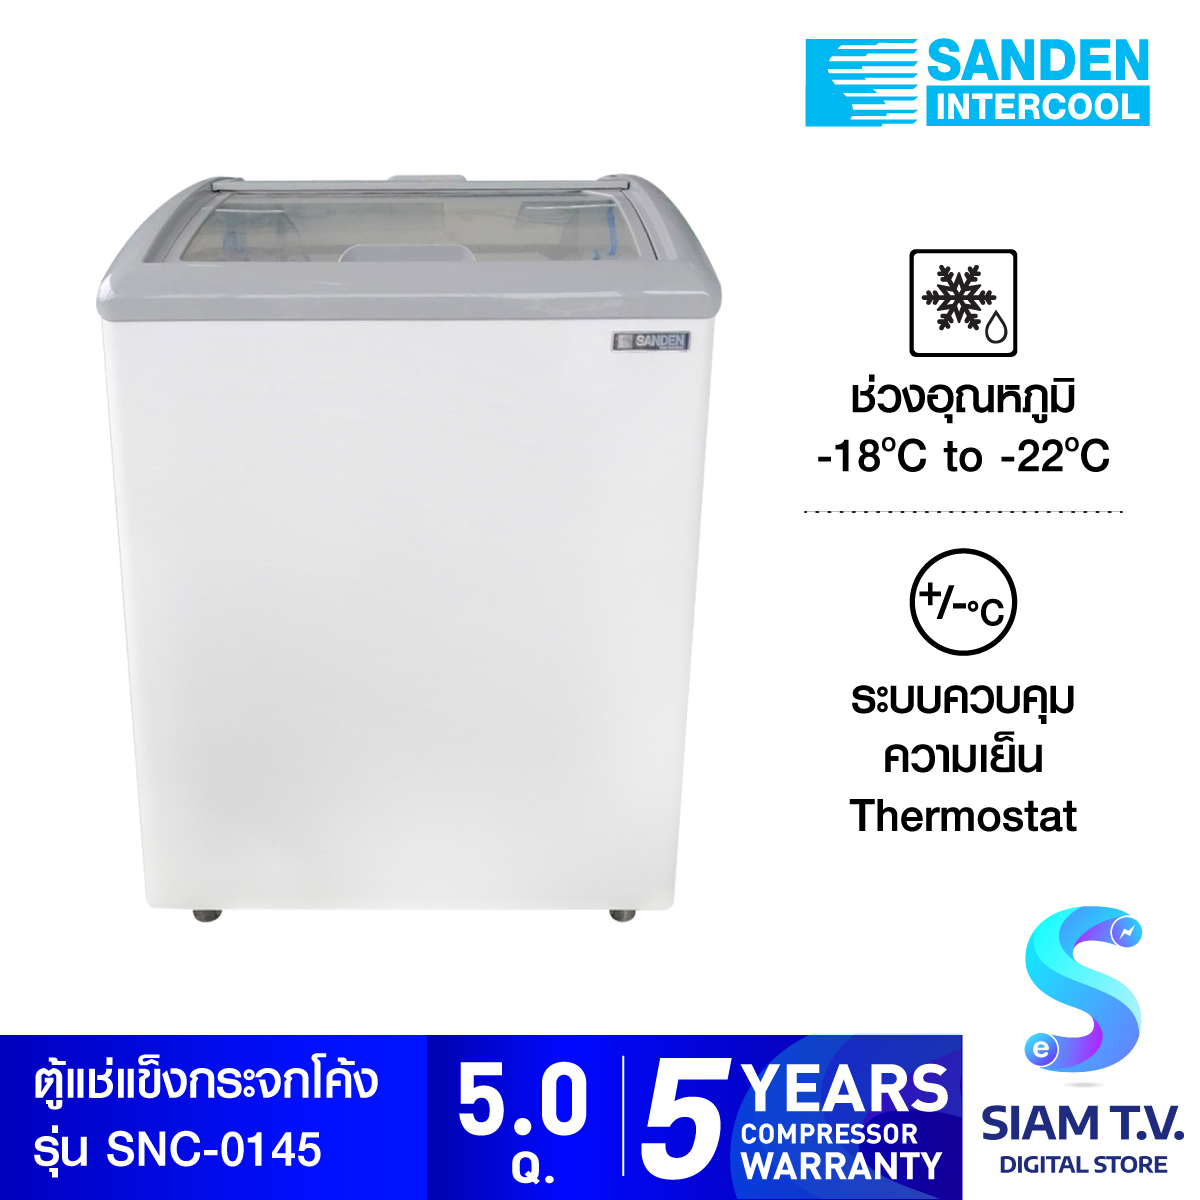 SANDEN ตู้แช่แข็งกระจกโค้ง รุ่น SNC-0145 ความจุ 142 ลิตร 5 คิว โดย สยามทีวี by Siam T.V.